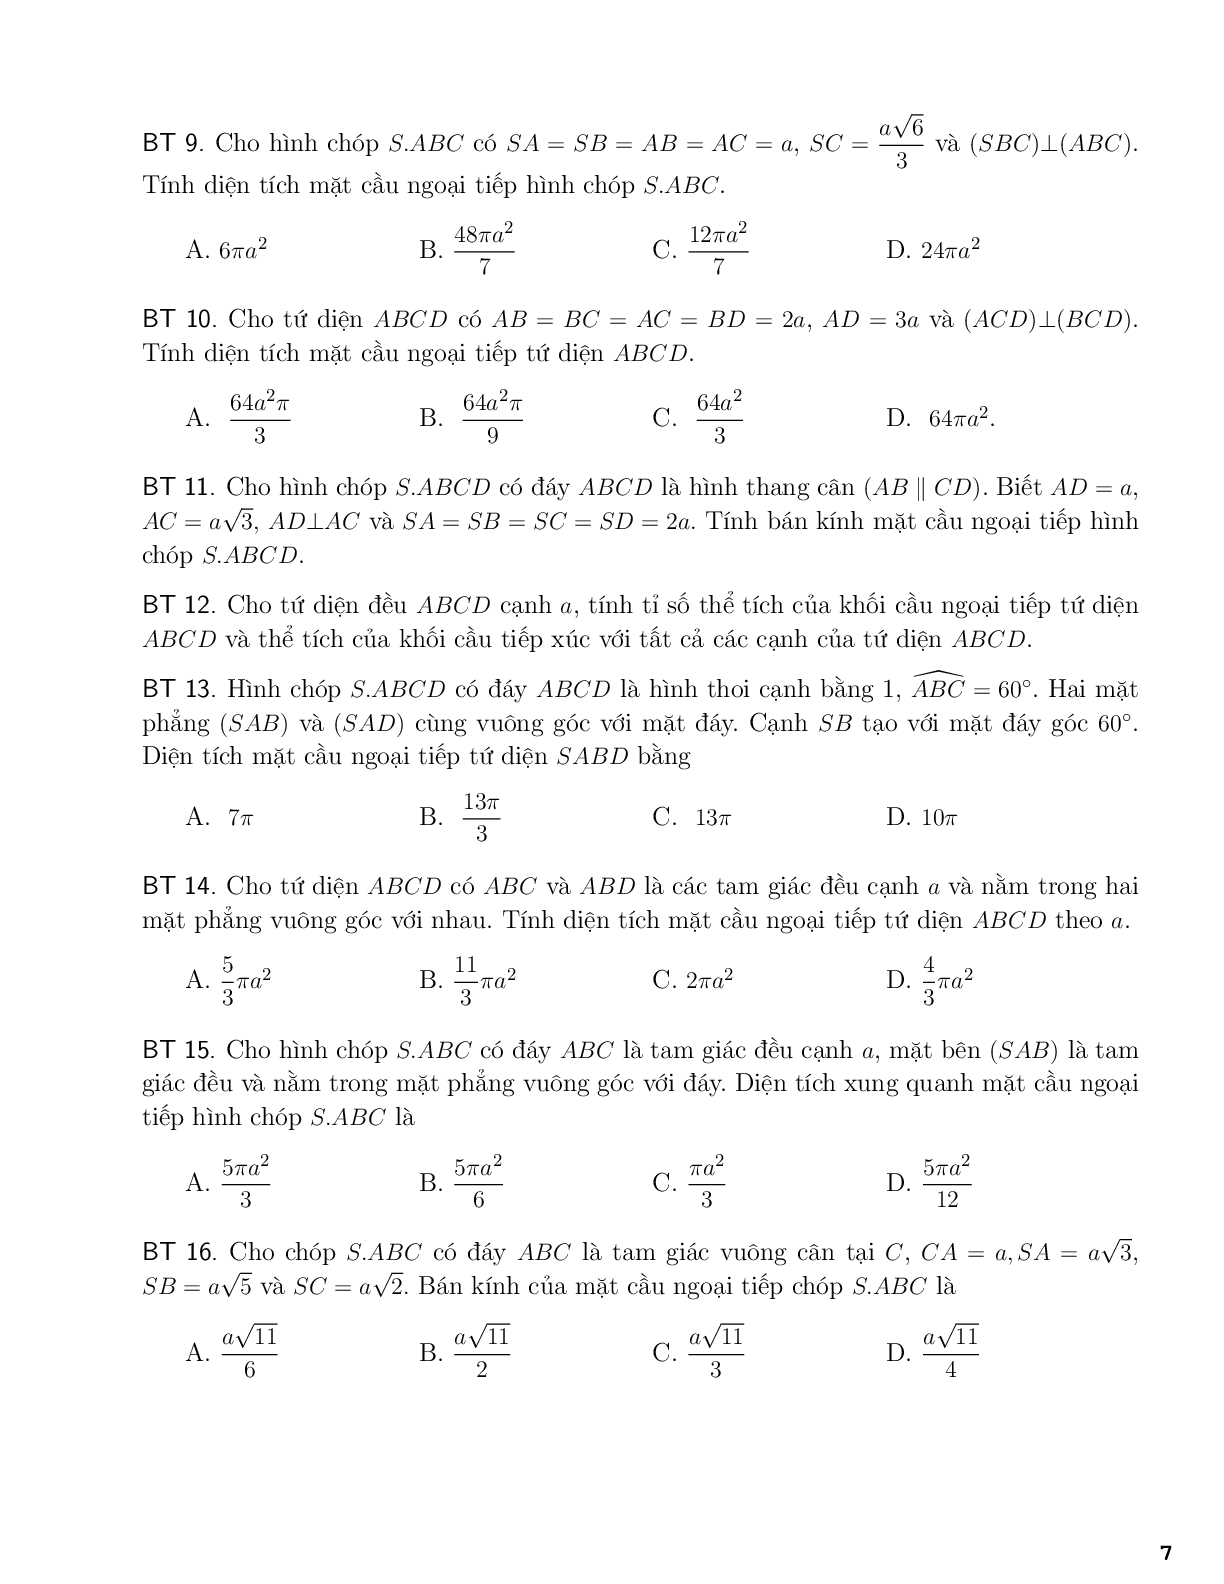 Một số công thức tính bán kính mặt cầu (trang 7)